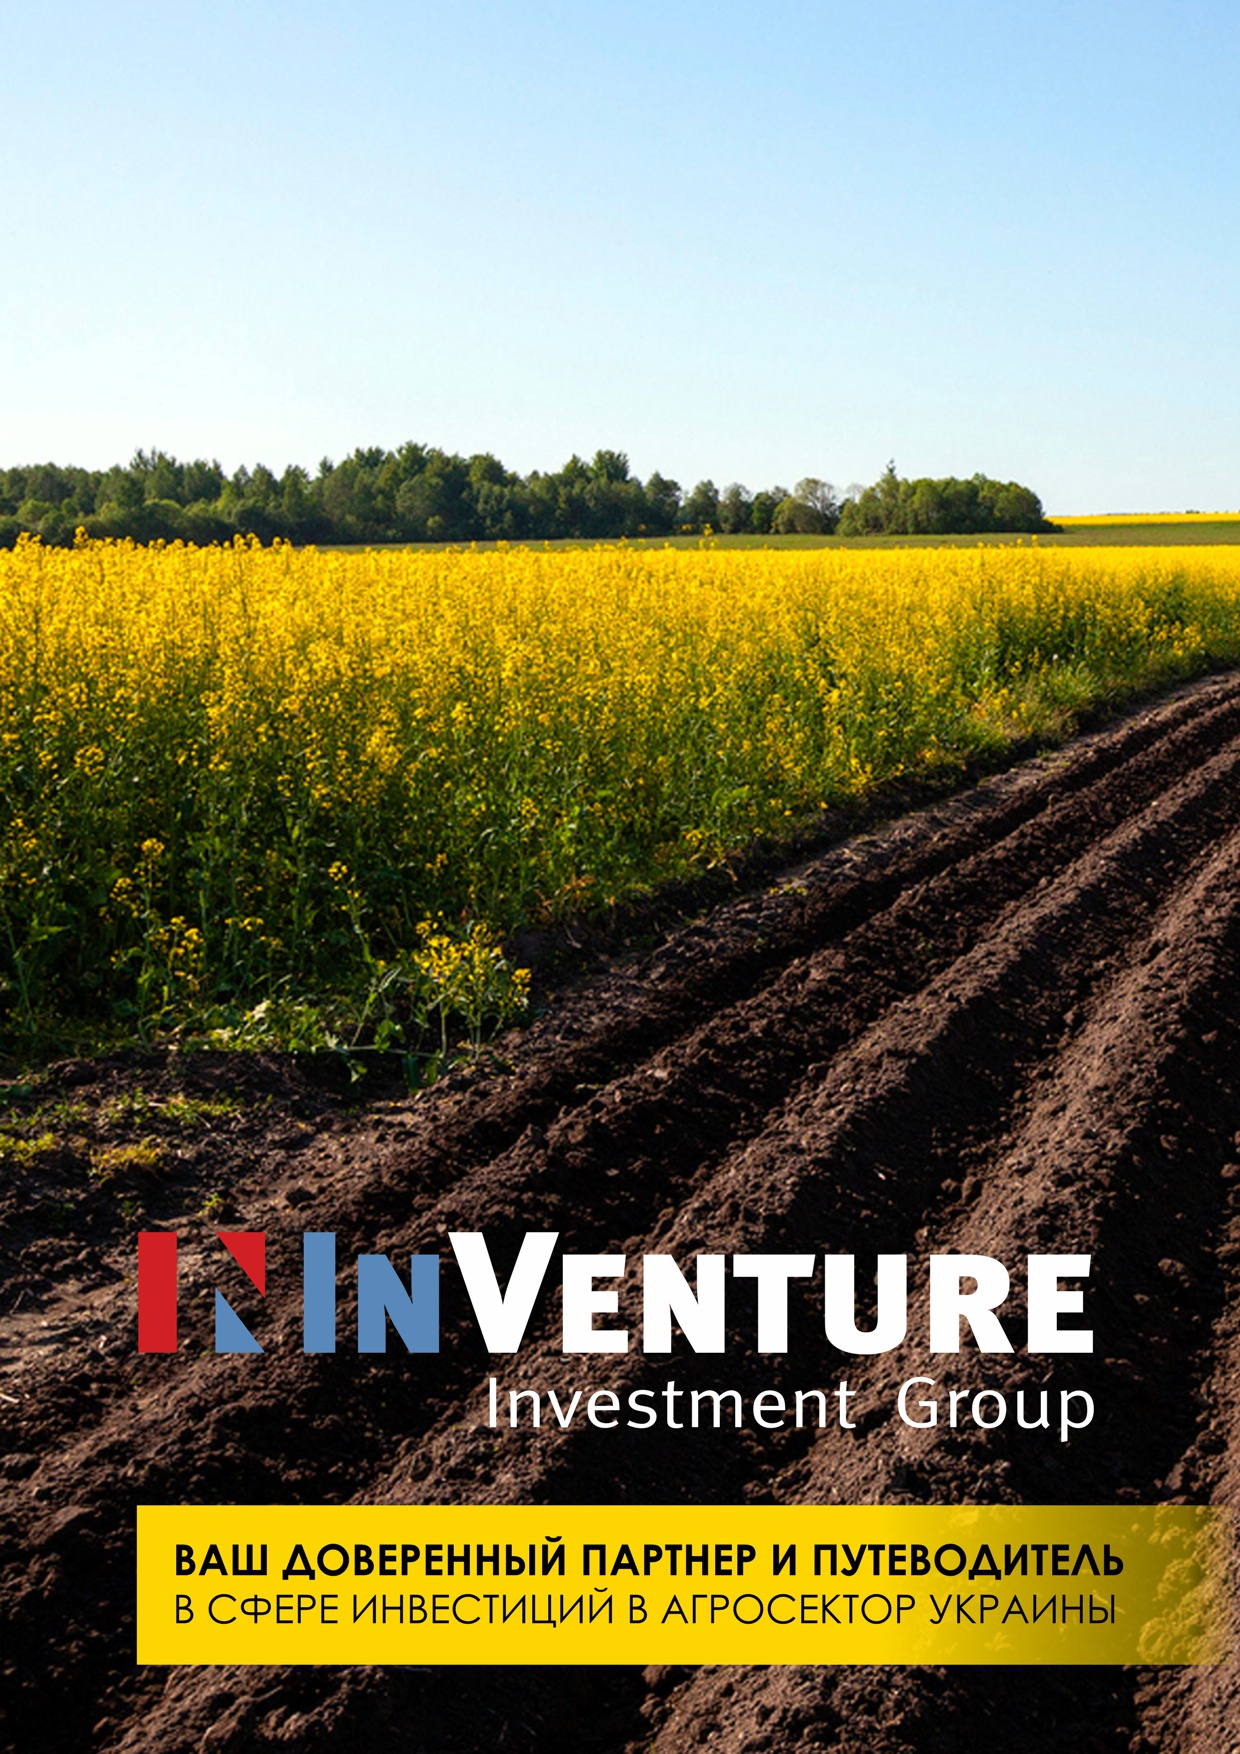 InVenture Agriculture Investment Services / Ukraine